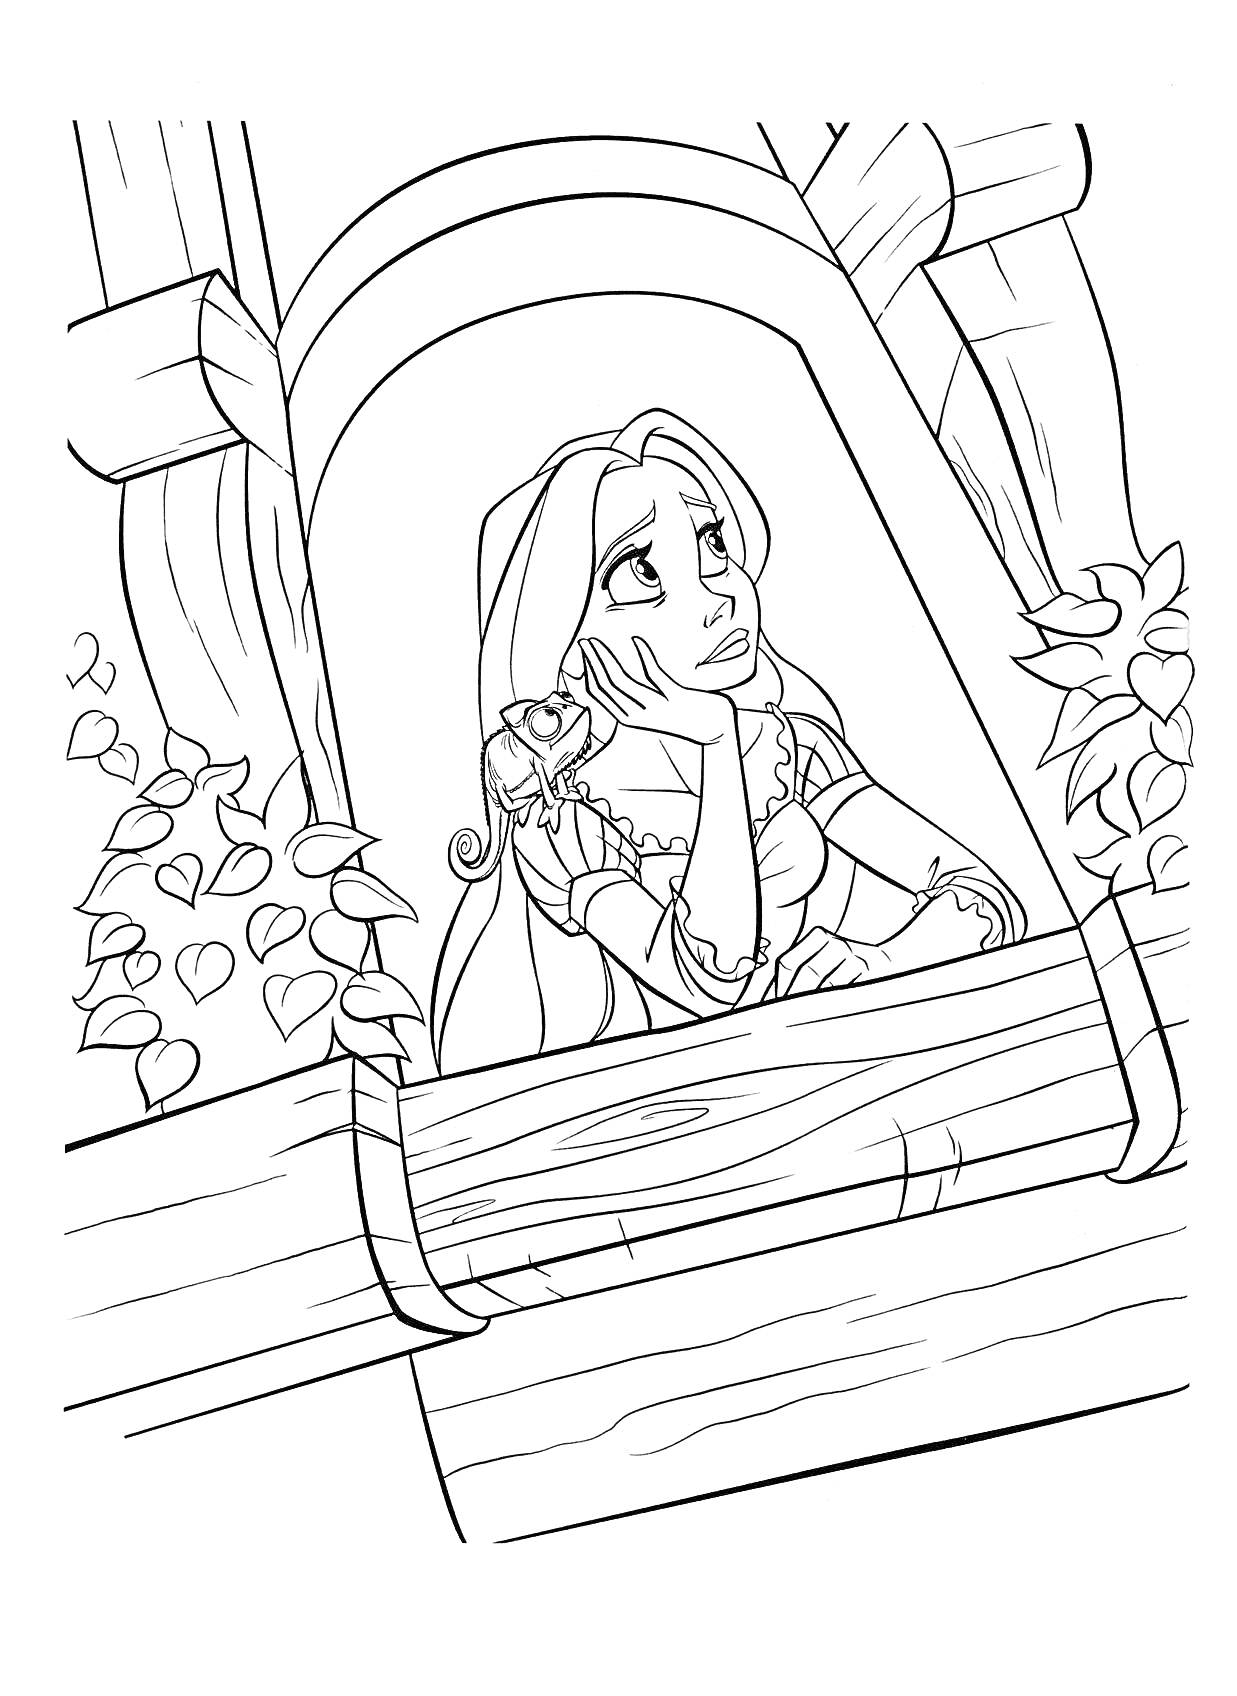 Девочка с длинными волосами на балконе, украшенном листьями